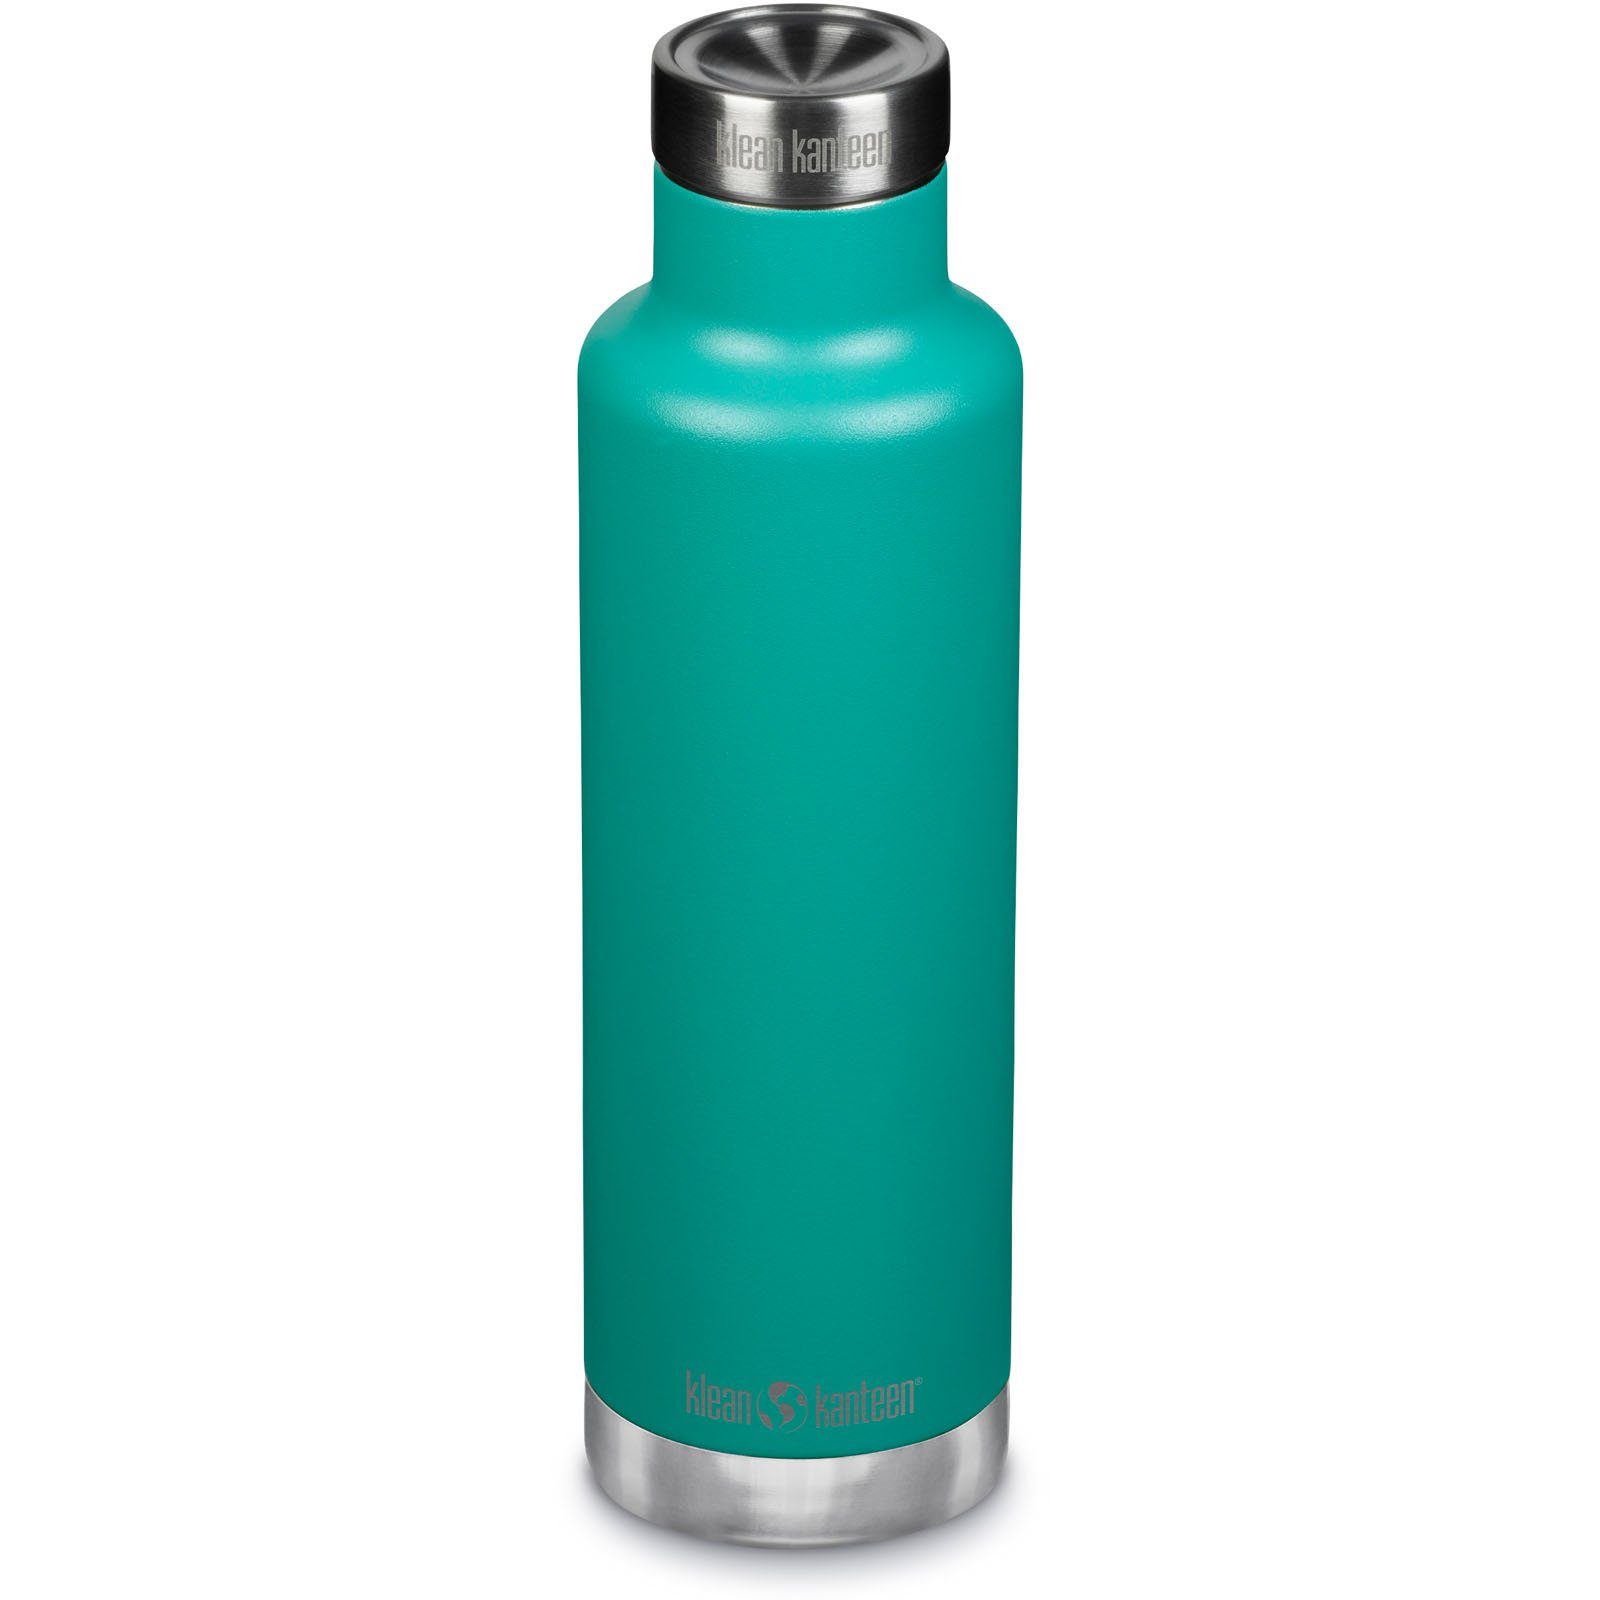 Klean Kanteen Thermoflasche Isolierkanne 750 ml Classic Isolierflasche, Thermo Flasche Vakuum